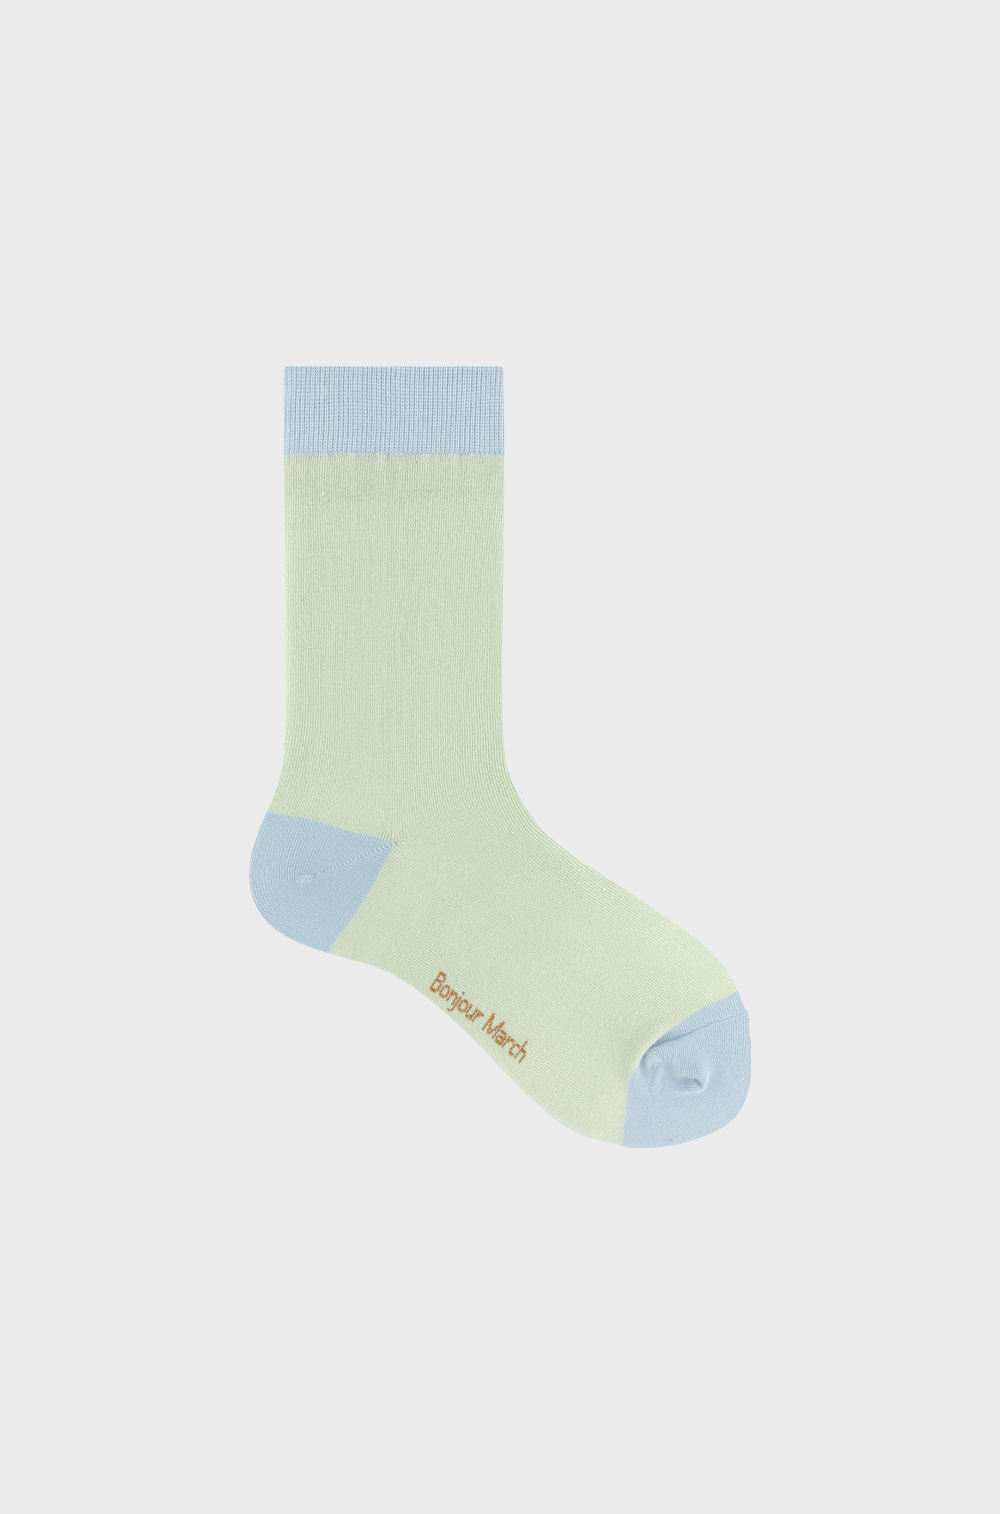 Pair socks_mint blue